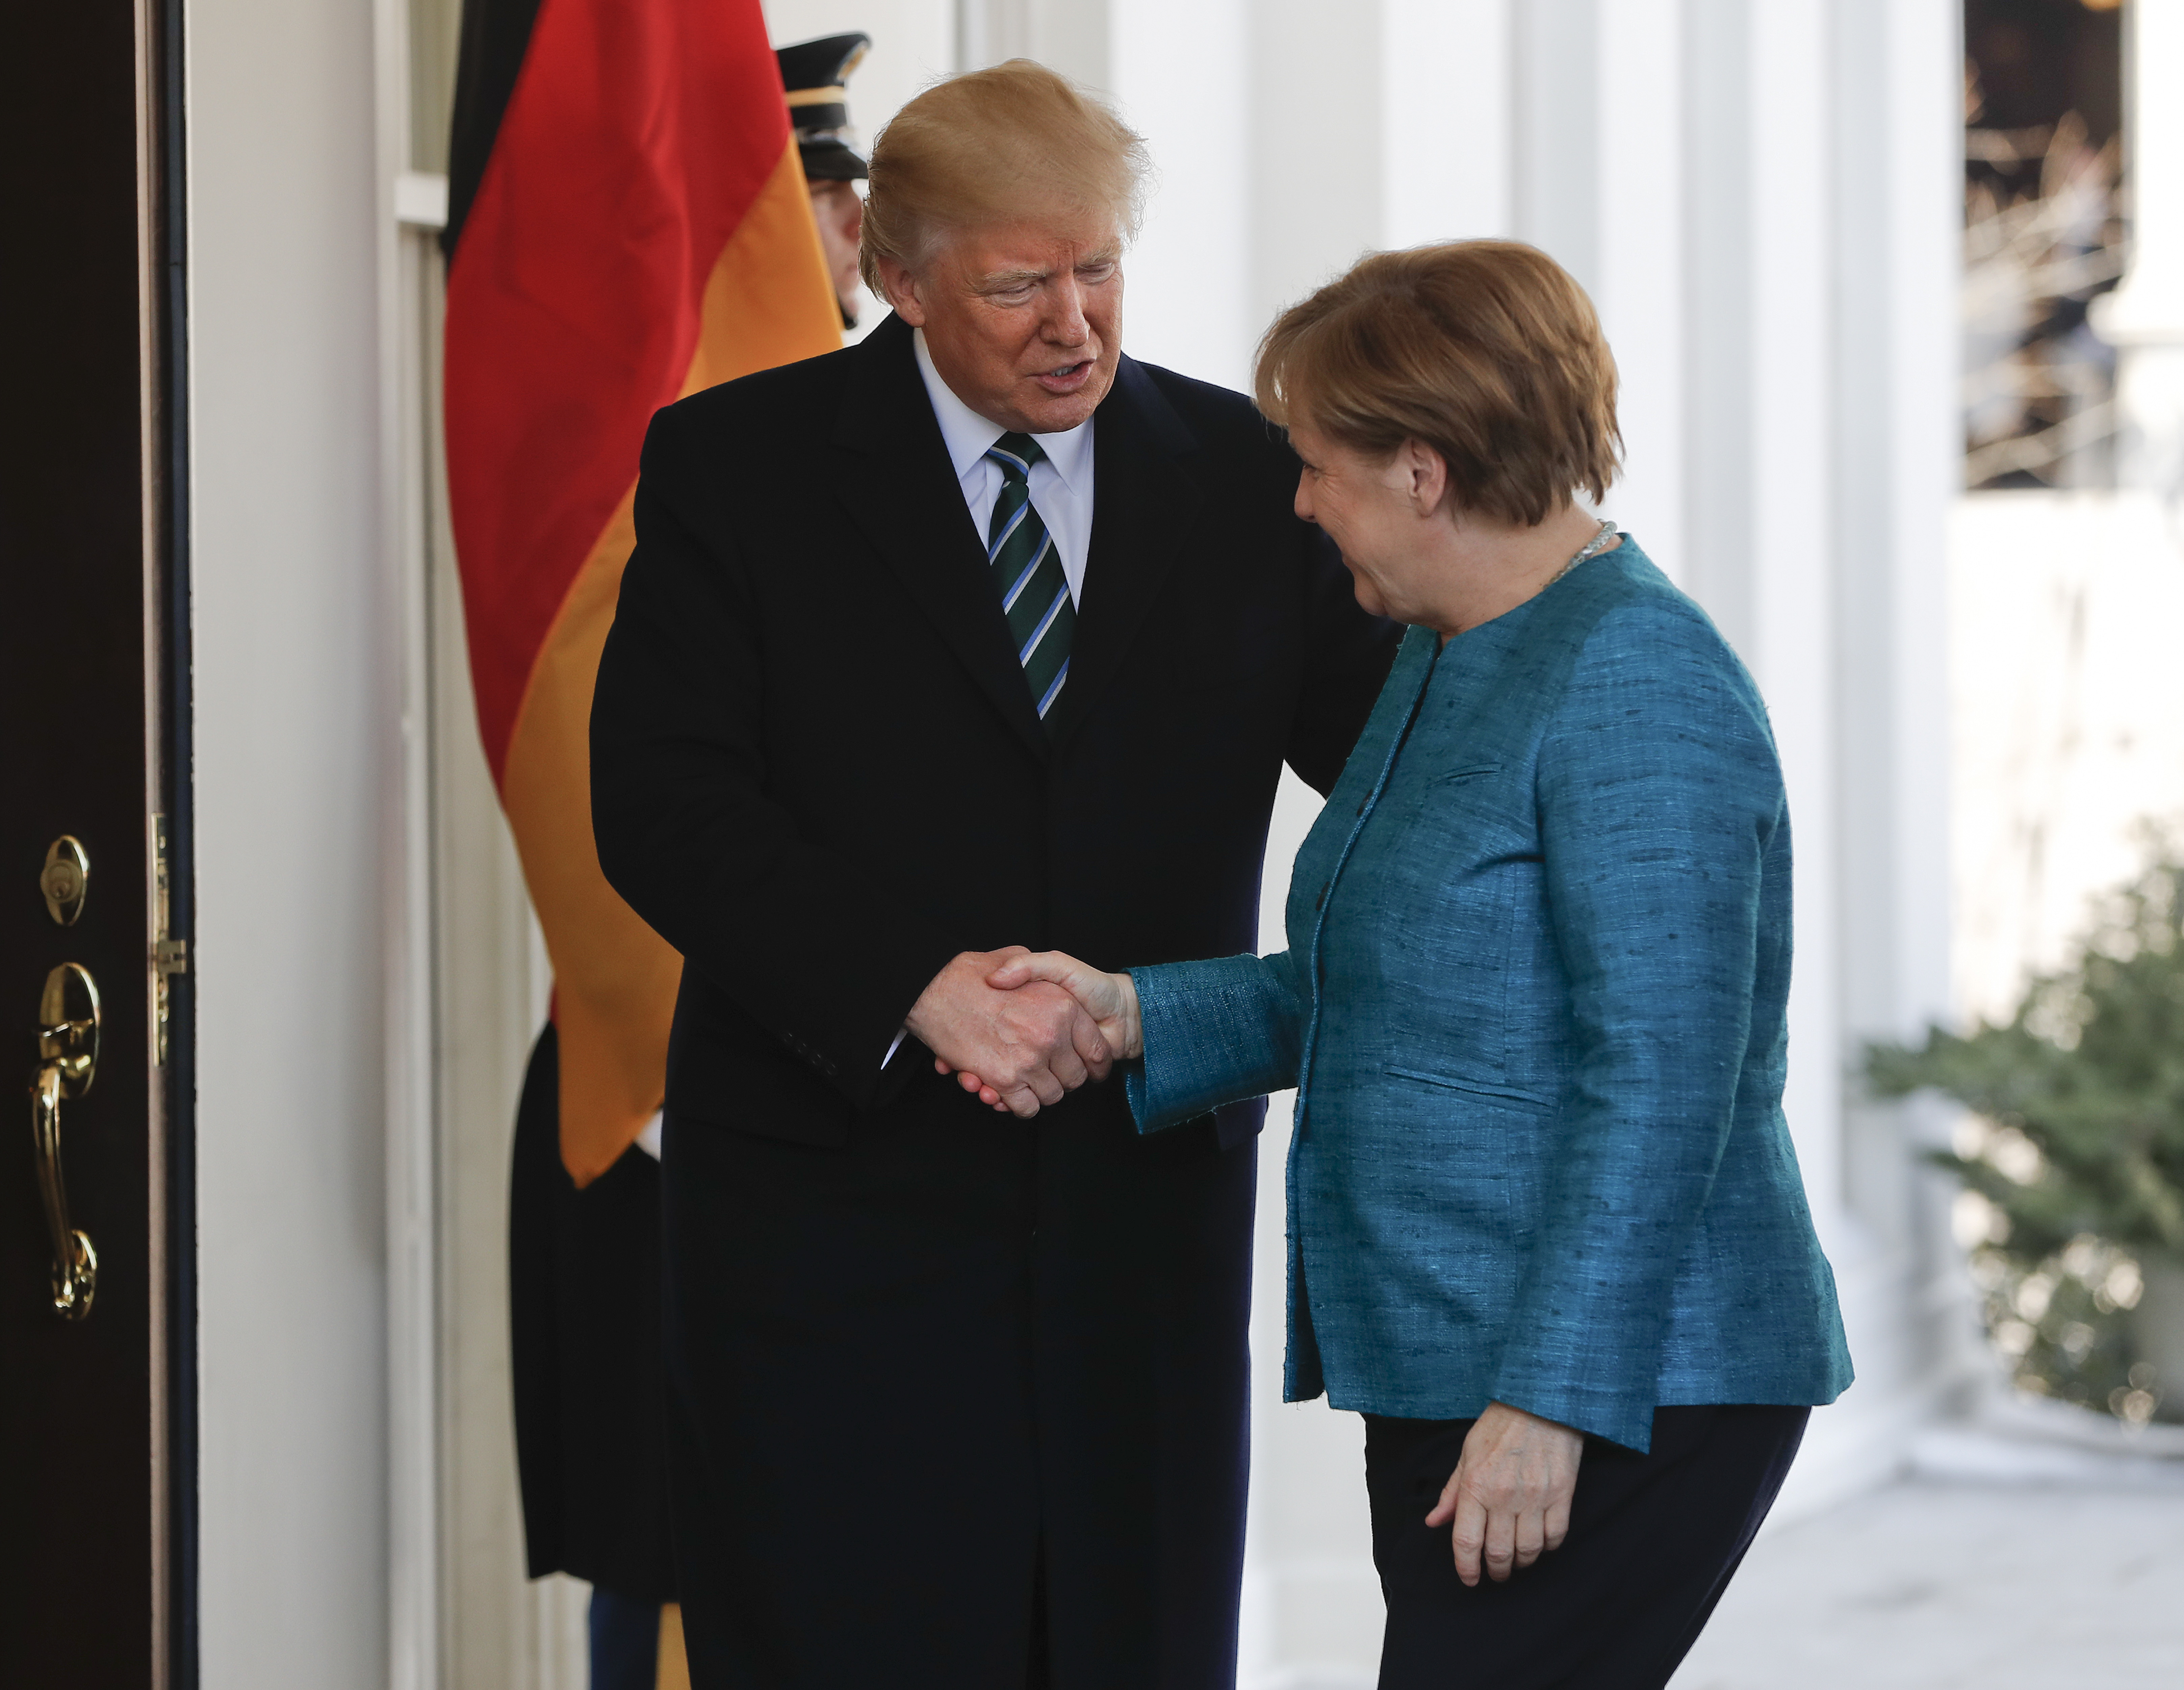 Trump shaking Merkel's hand